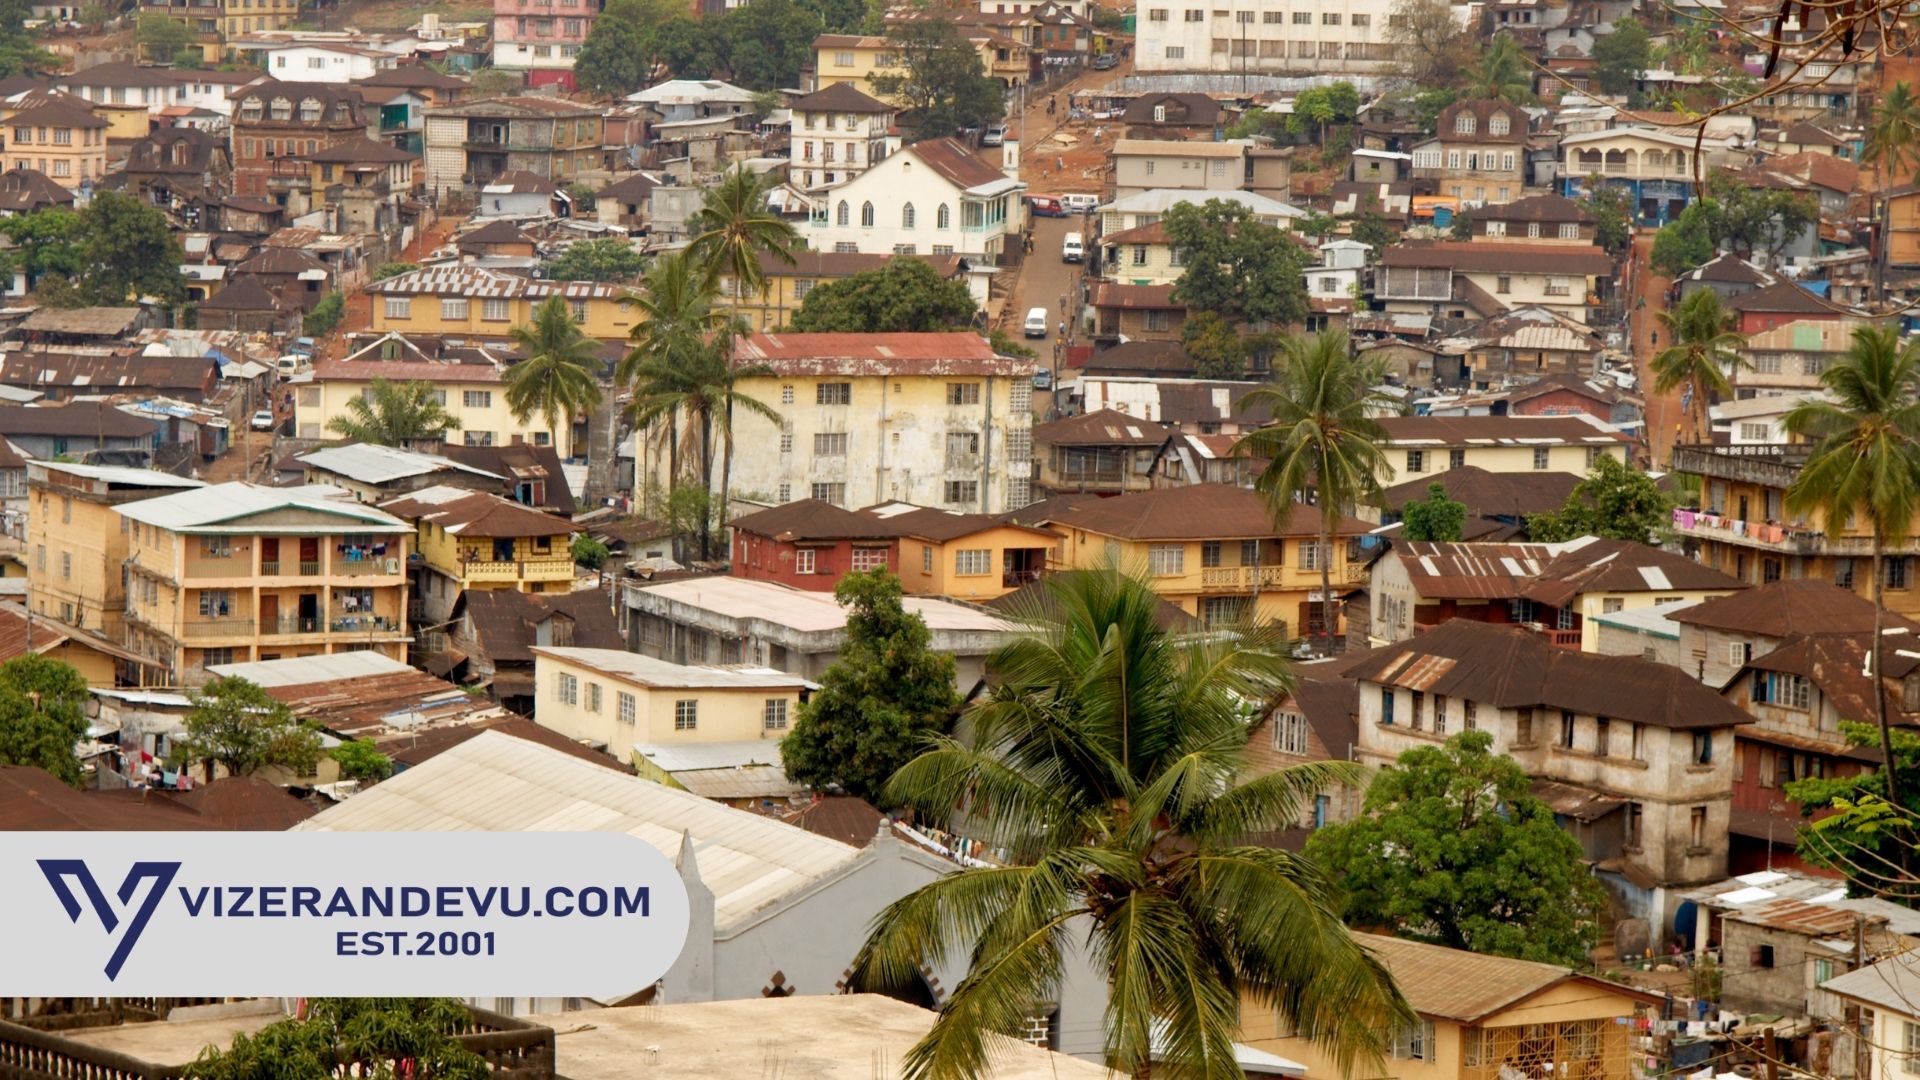 Sierra Leone Vizesi: Randevu ve Başvuru (2021)